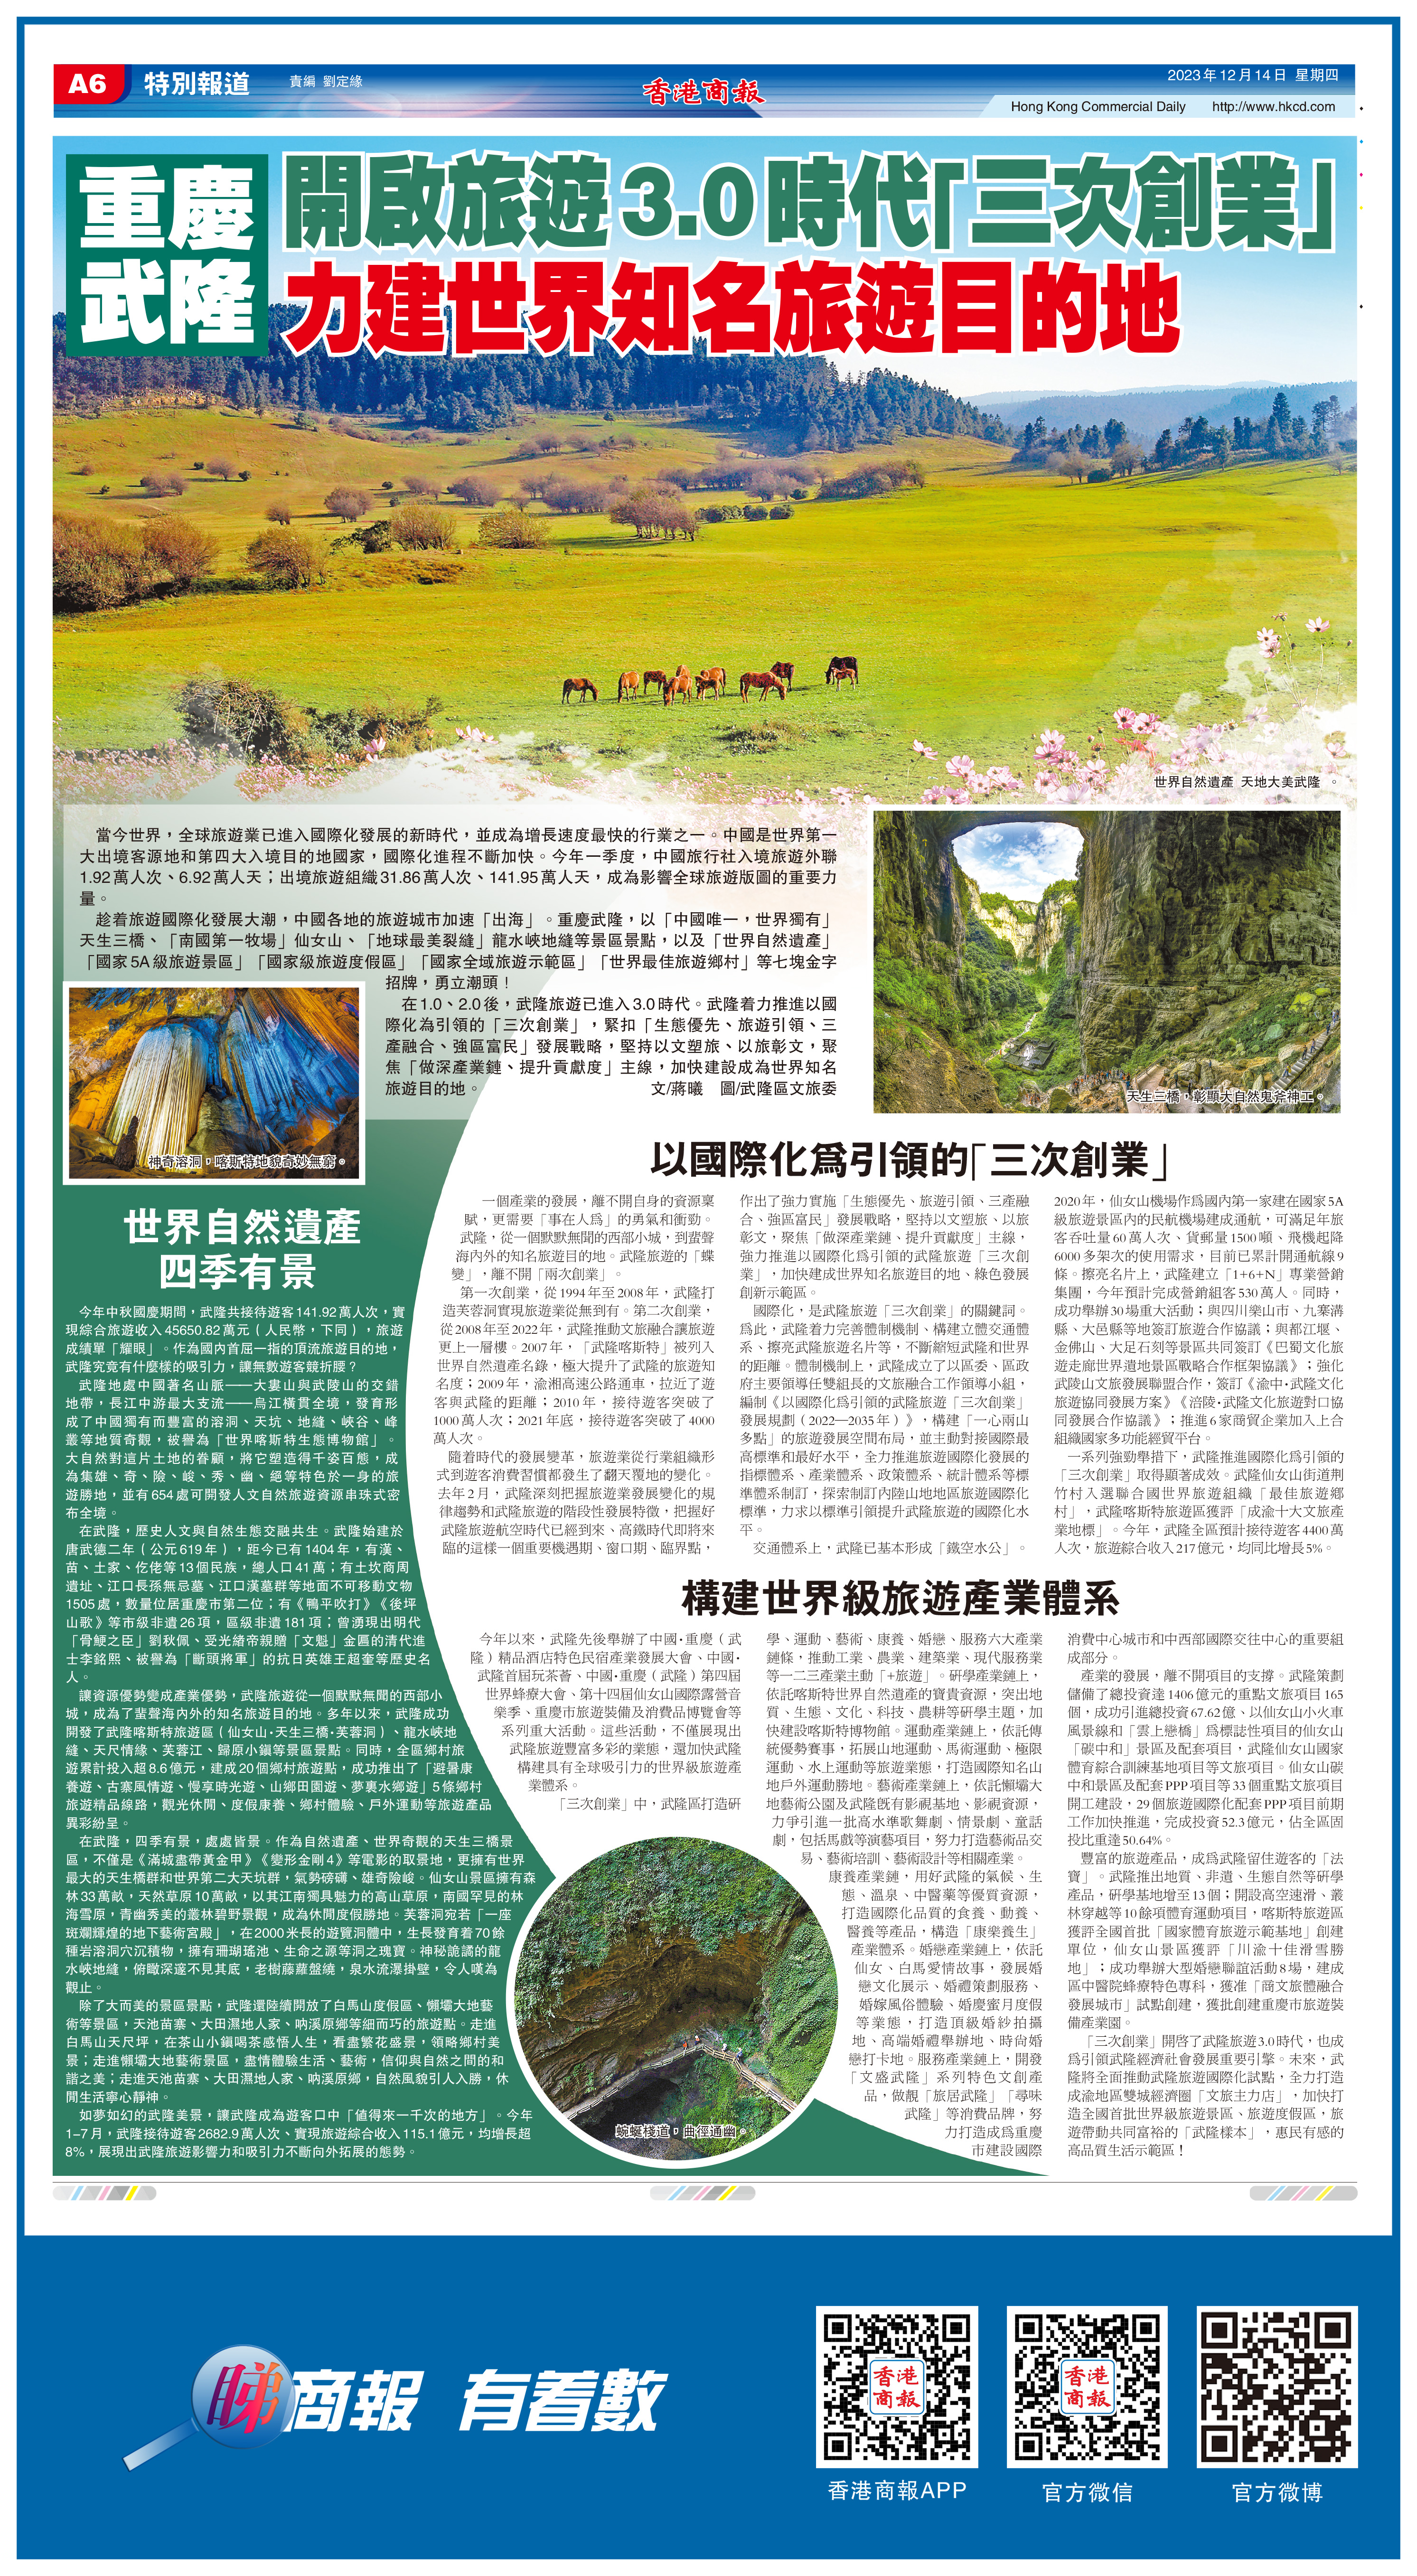 重慶武隆開啟旅遊3.0時代「三次創業」 力建世界知名旅遊目的地